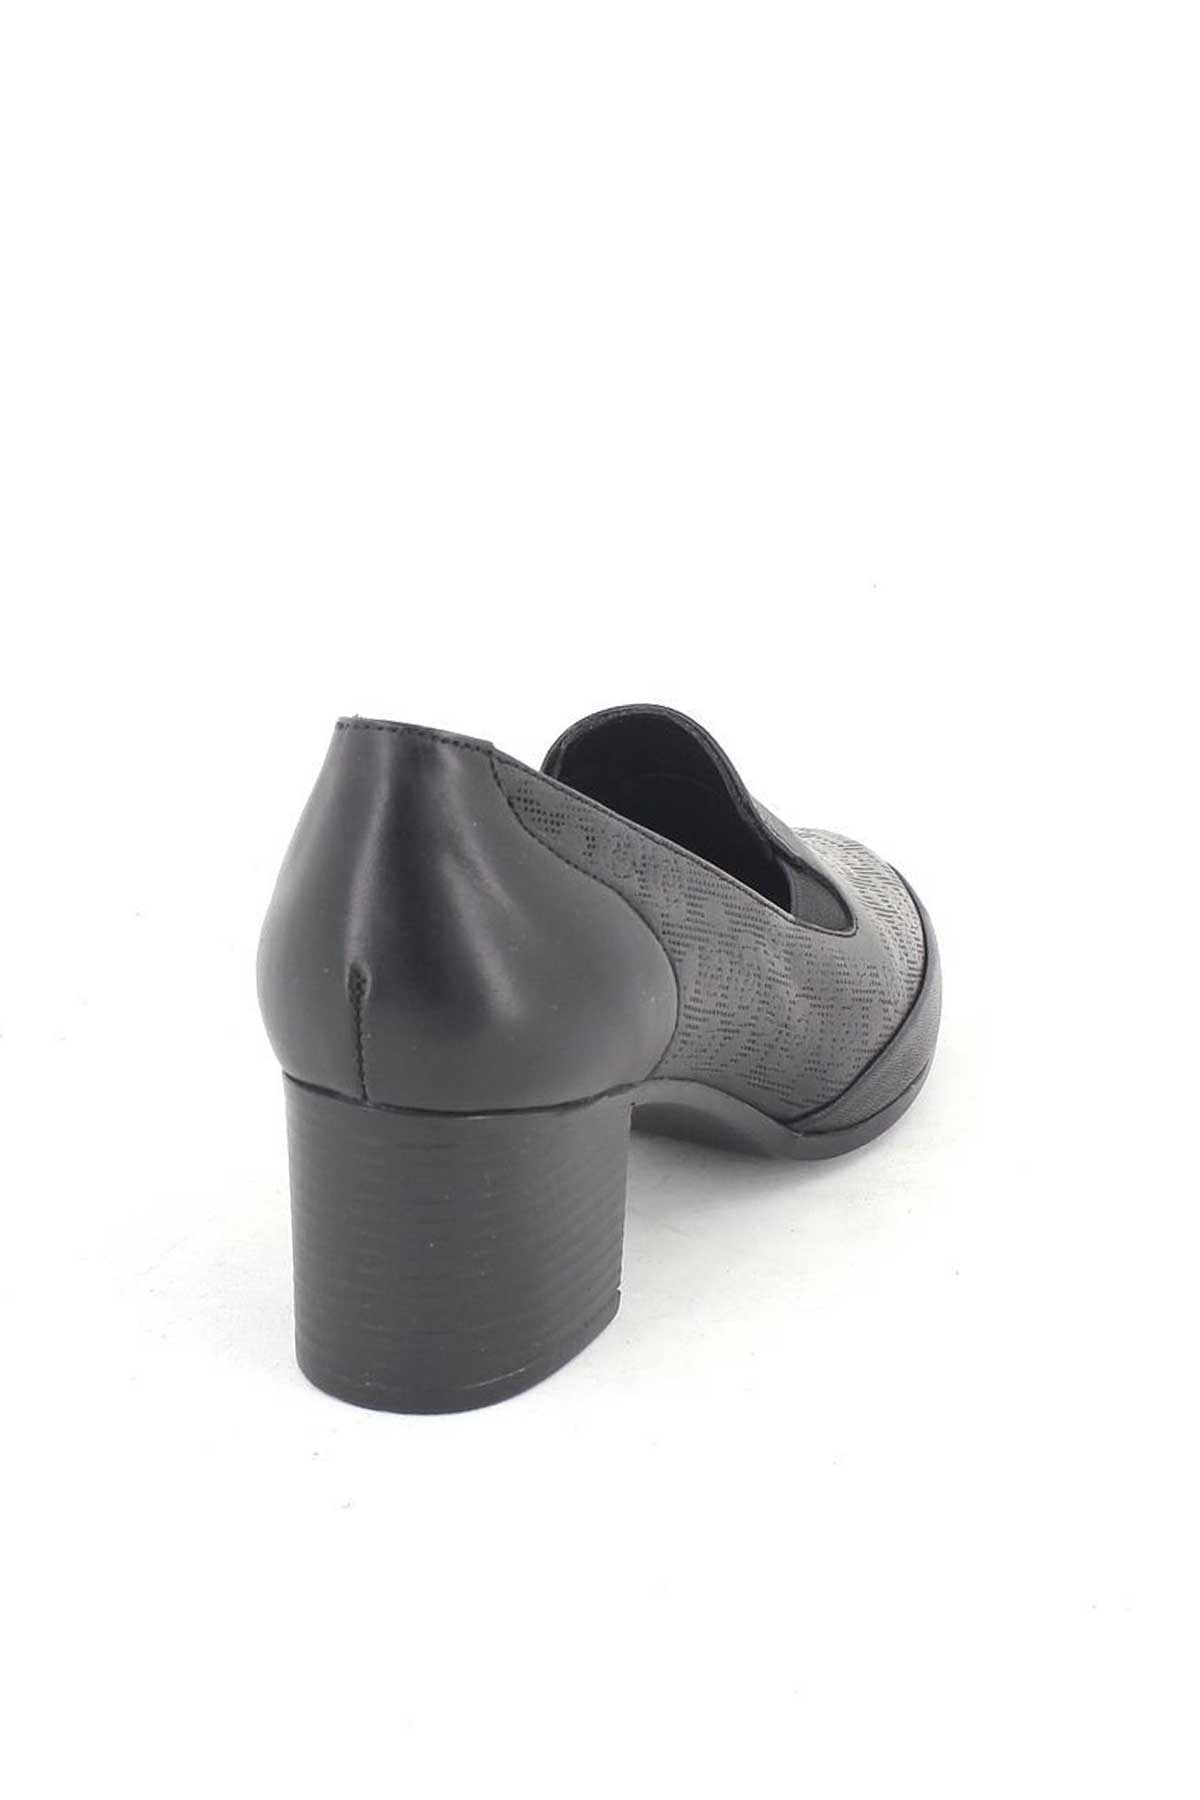 Kadın Topuklu Deri Ayakkabı Baskılı Siyah 1911902K - Thumbnail